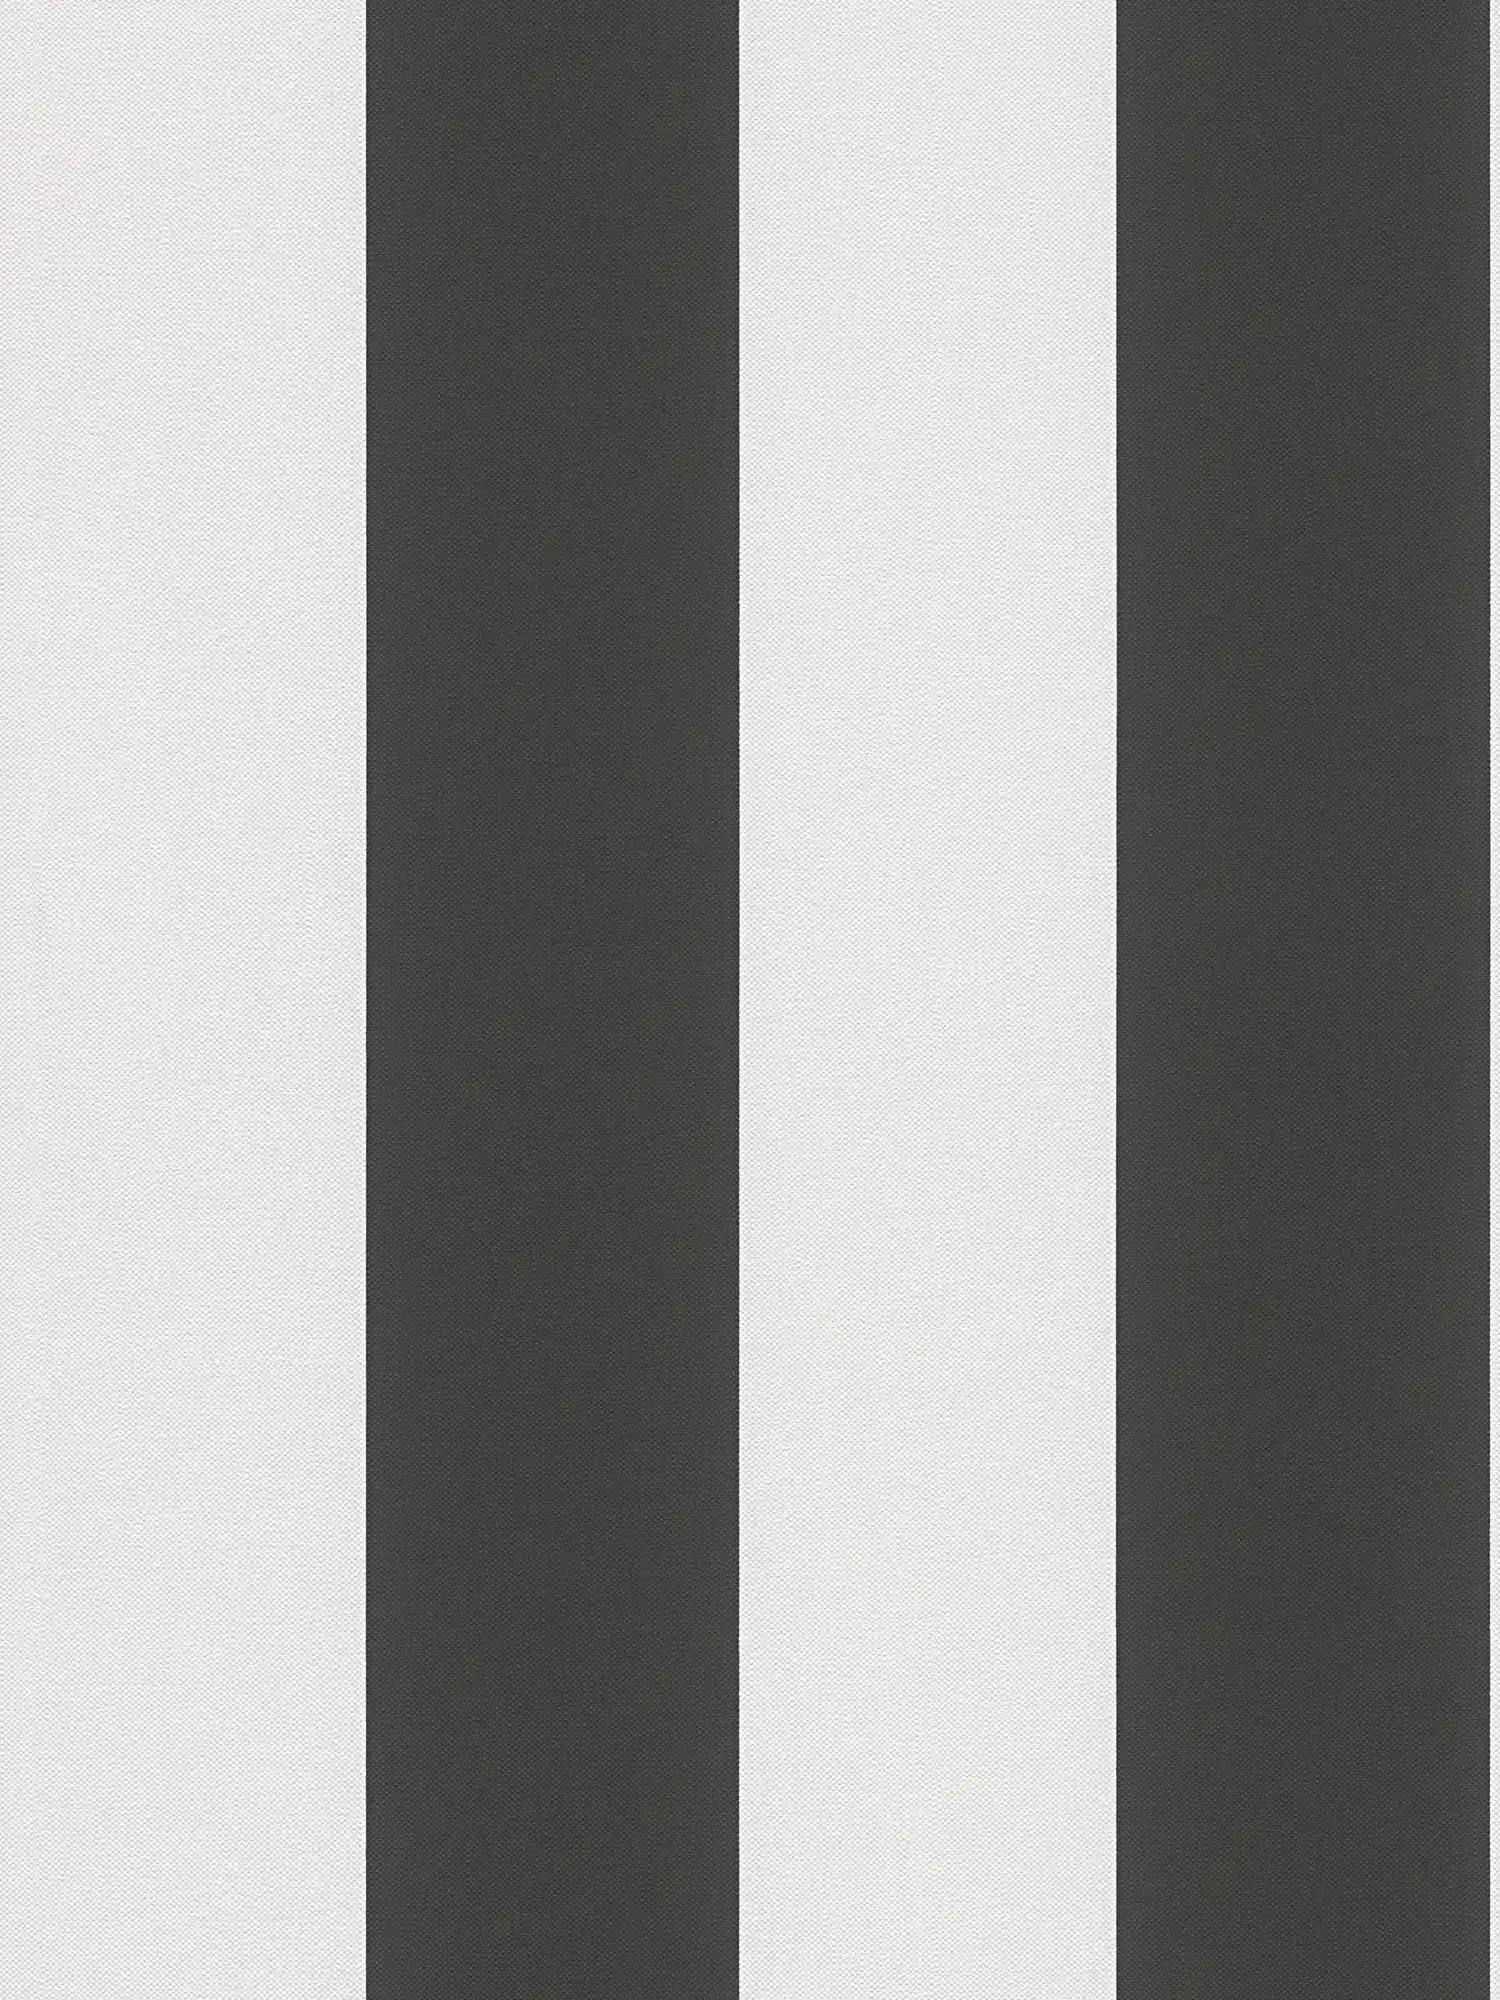 Striped wallpaper black and white design
